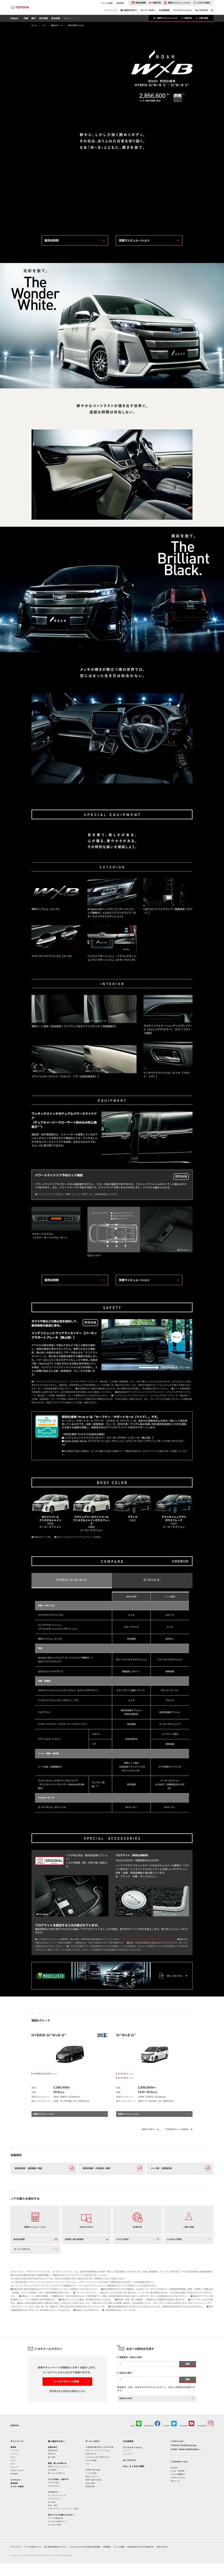 トヨタ ノア 特別仕様車 W B サイトのランディングページデザイン Lp参考事例 Lp幹事